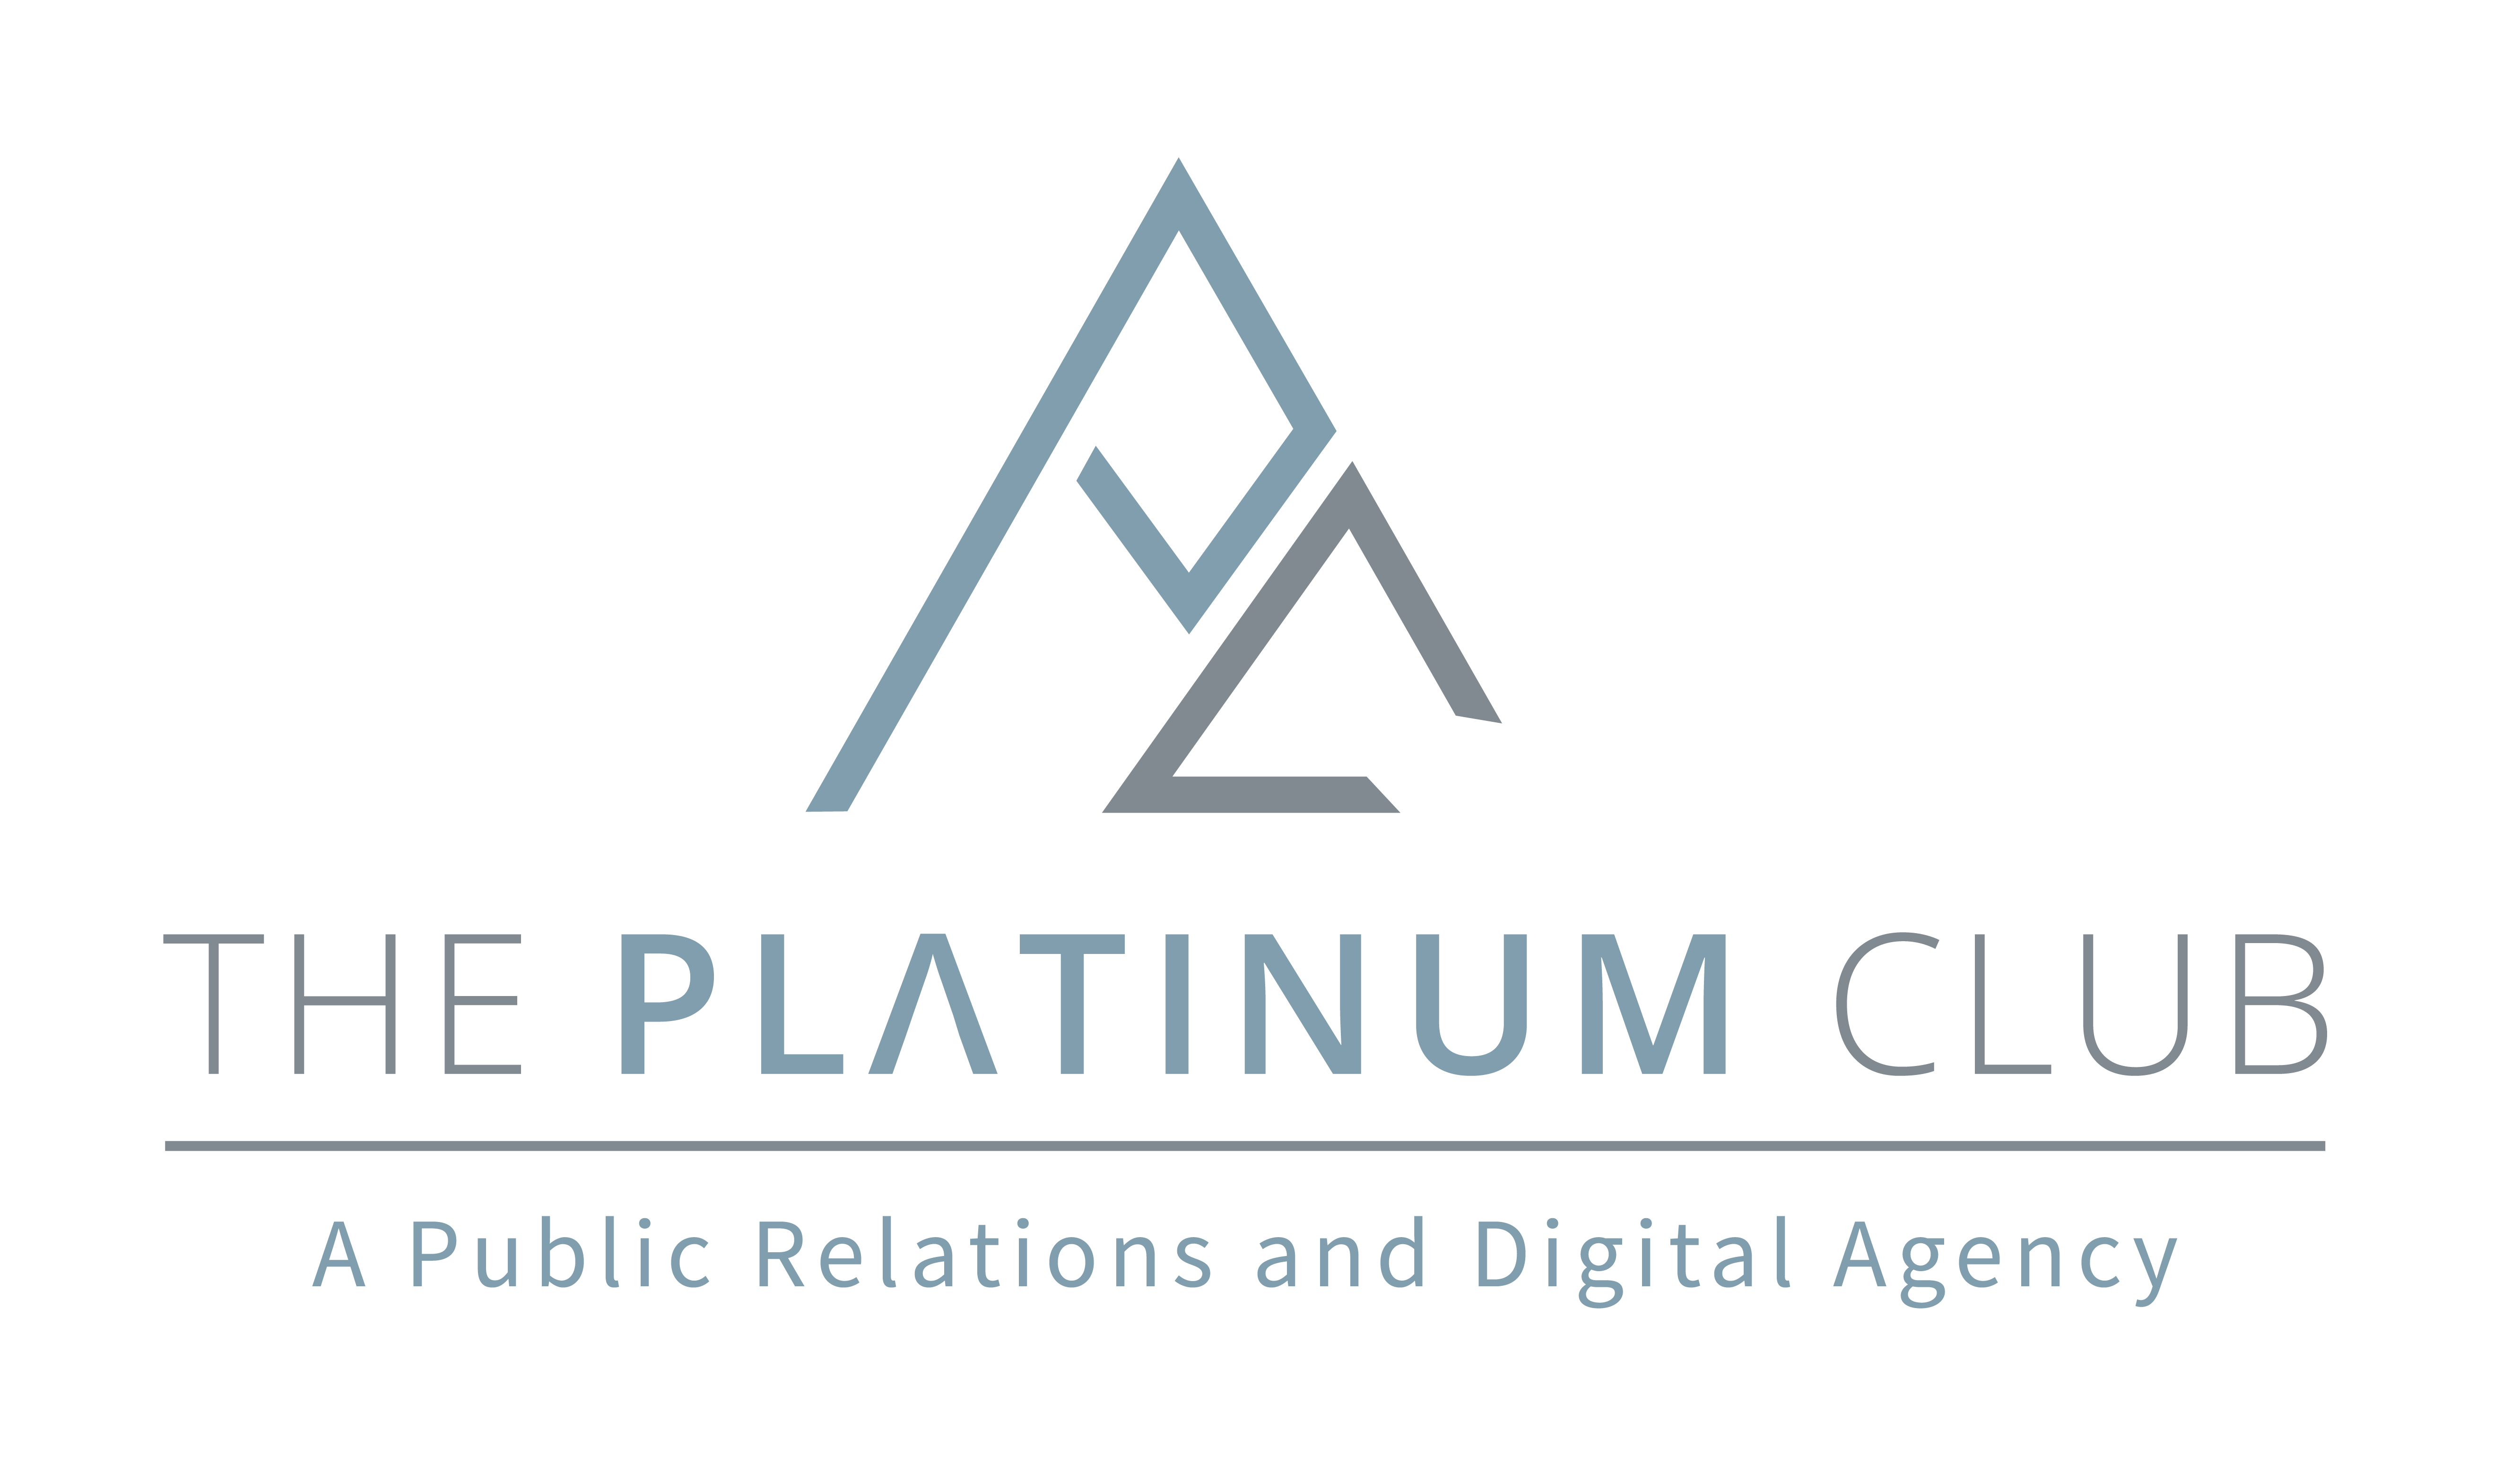 The Platinum Club